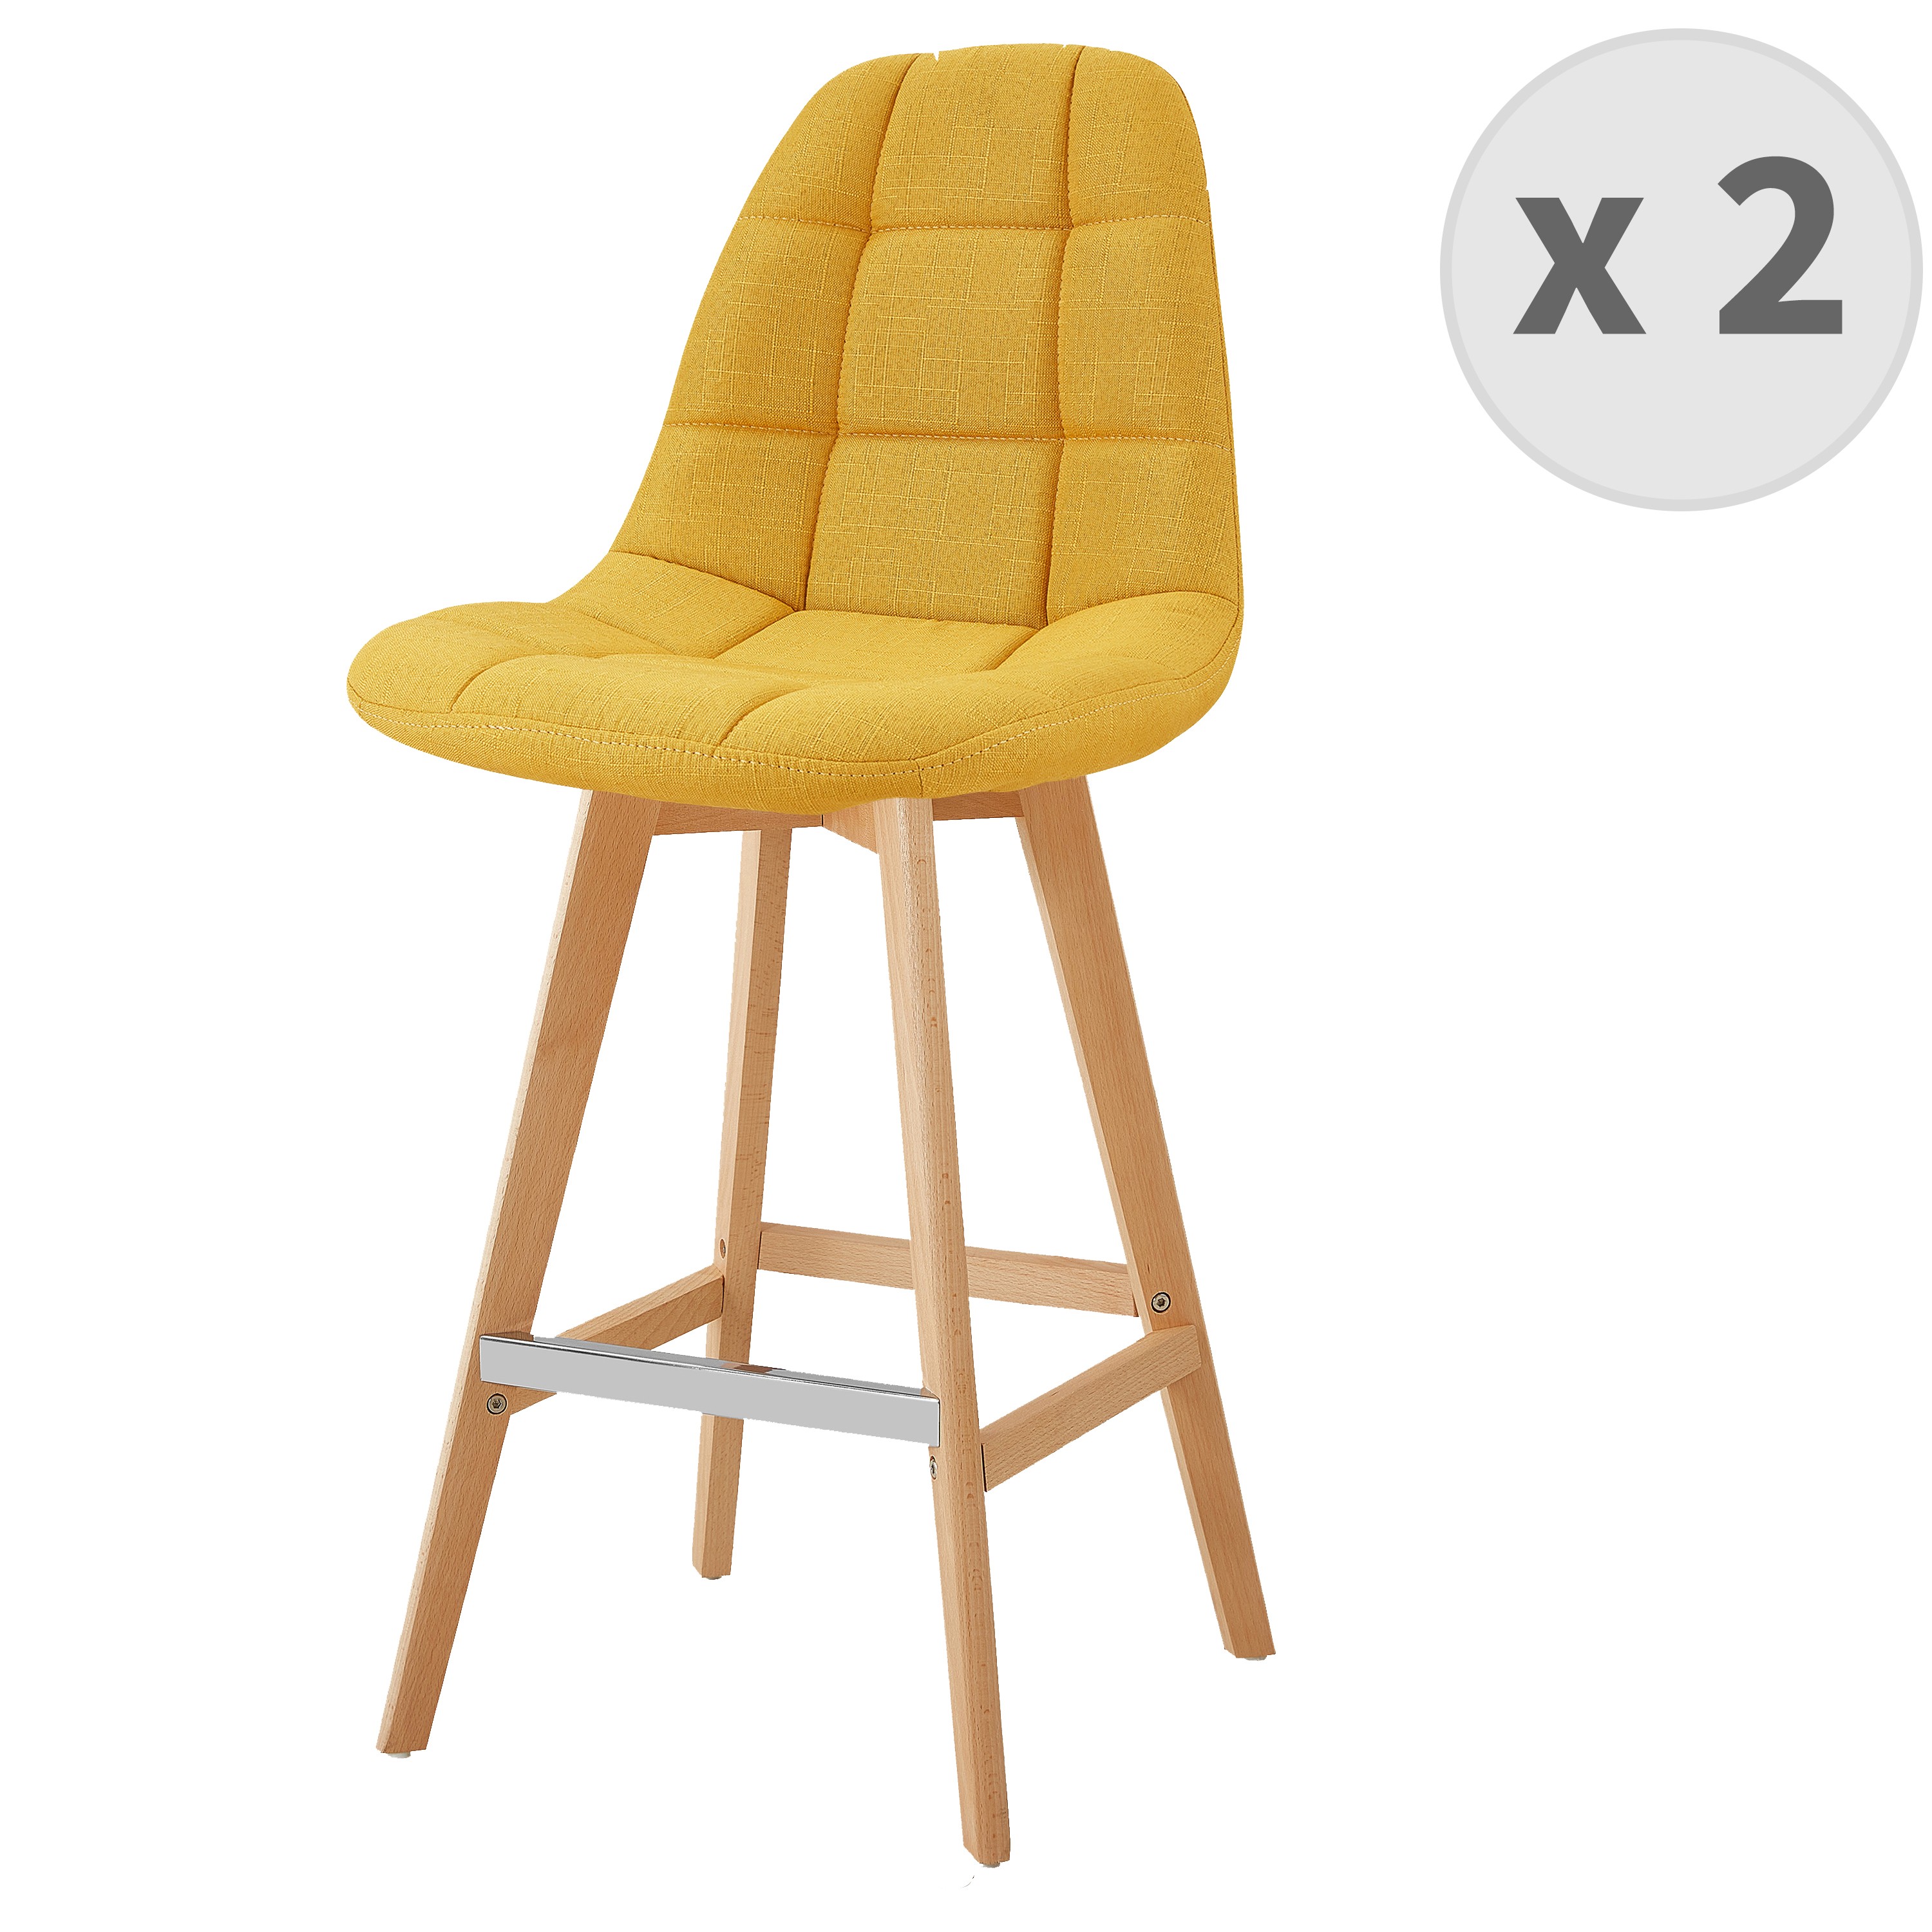 OWEN - Chaise de bar scandinave tissu Curry pied hêtre (x2)